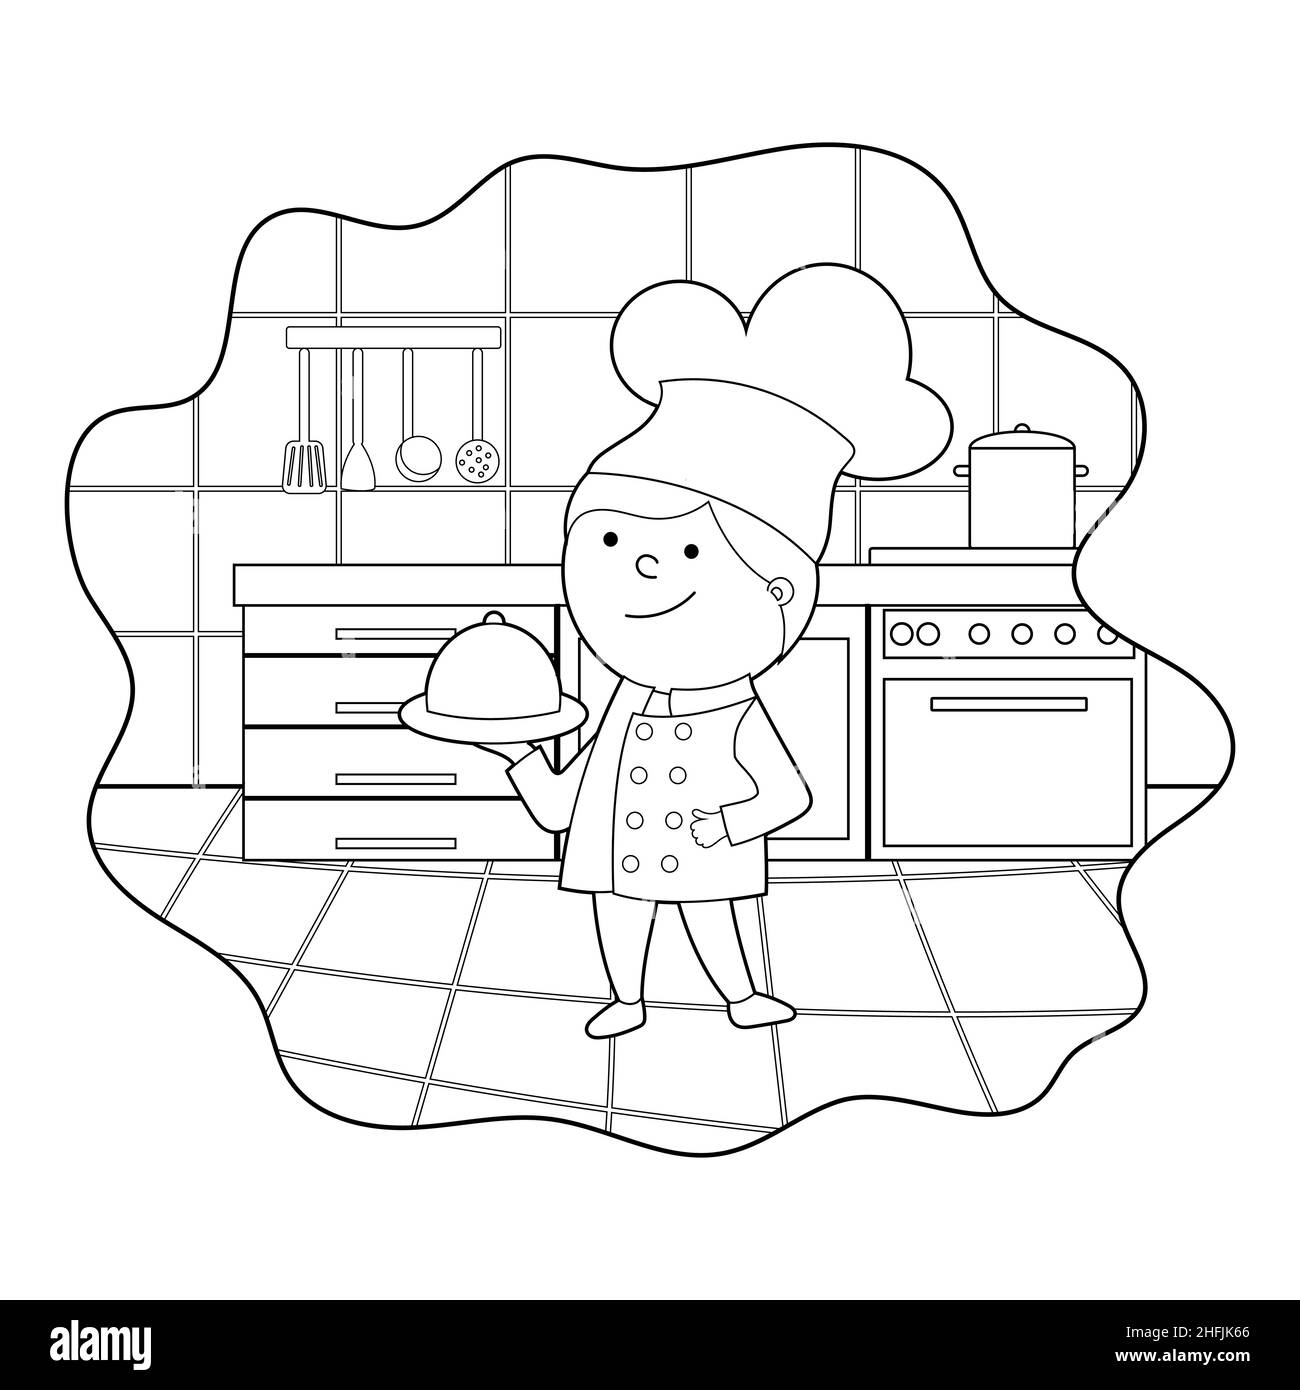 livre de coloriage. dessin animé illustration d'un cuisinier dans la cuisine, vecteur isolé sur un fond blanc Illustration de Vecteur